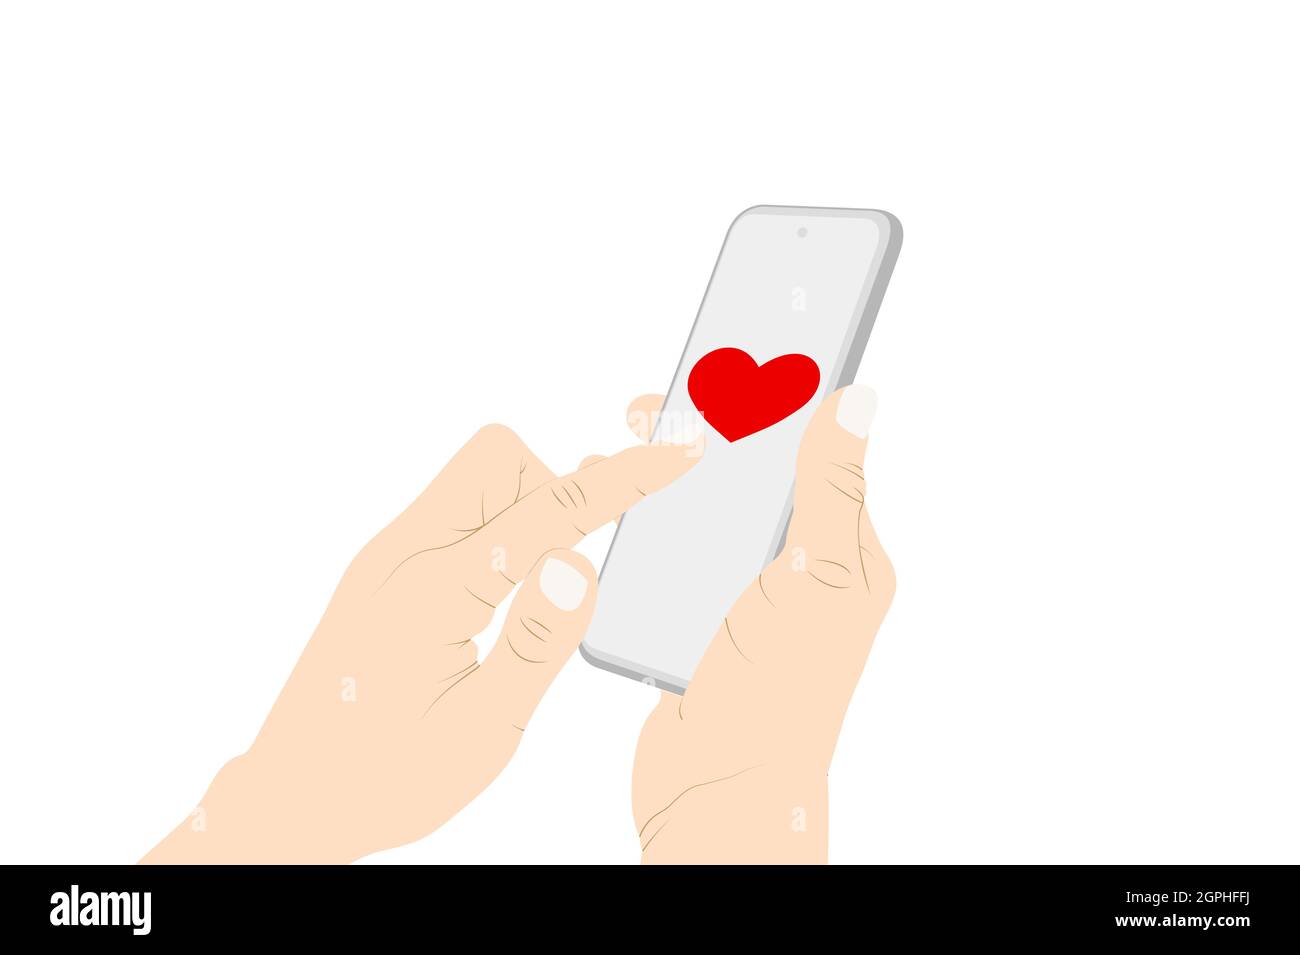 Senden von Herz-Emoji mit Telefon, Flirten, Herz-Symbol, Frau Hand Senden einer Nachricht mit Telefon. Vektorgrafik Stock Vektor